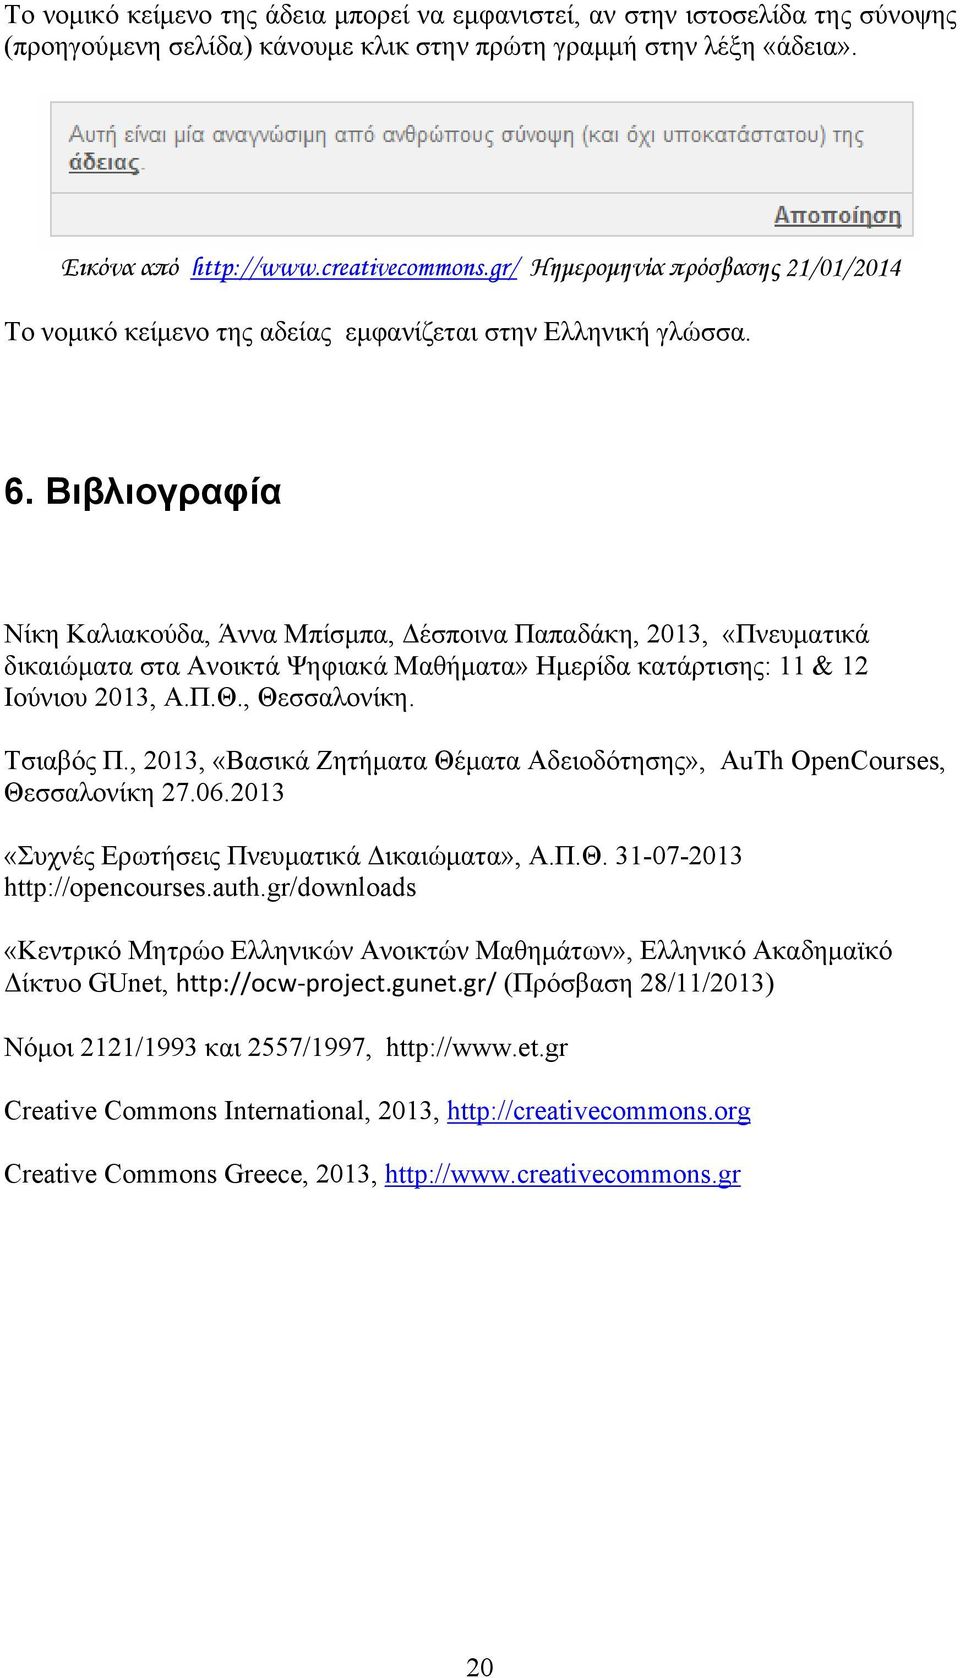 Βιβλιογραφία Νίκη Καλιακούδα, Άννα Μπίσμπα, Δέσποινα Παπαδάκη, 2013, «Πνευματικά δικαιώματα στα Ανοικτά Ψηφιακά Μαθήματα» Ημερίδα κατάρτισης: 11 & 12 Ιούνιου 2013, Α.Π.Θ., Θεσσαλονίκη. Τσιαβός Π.